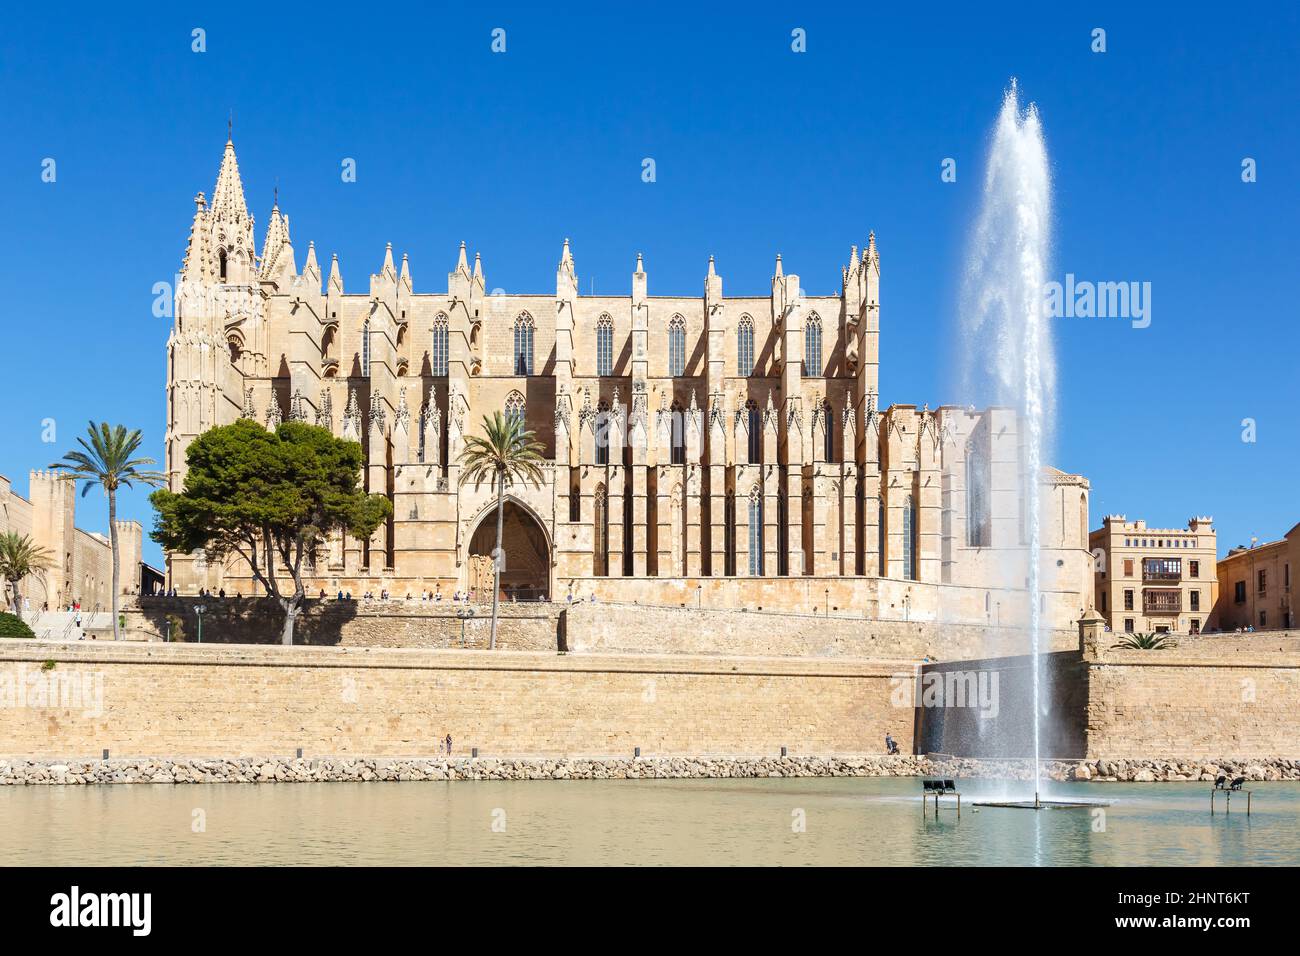 Cattedrale Catedral de Palma de Mallorca la Seu chiesa architettura viaggio vacanze in vacanza in Spagna Foto Stock